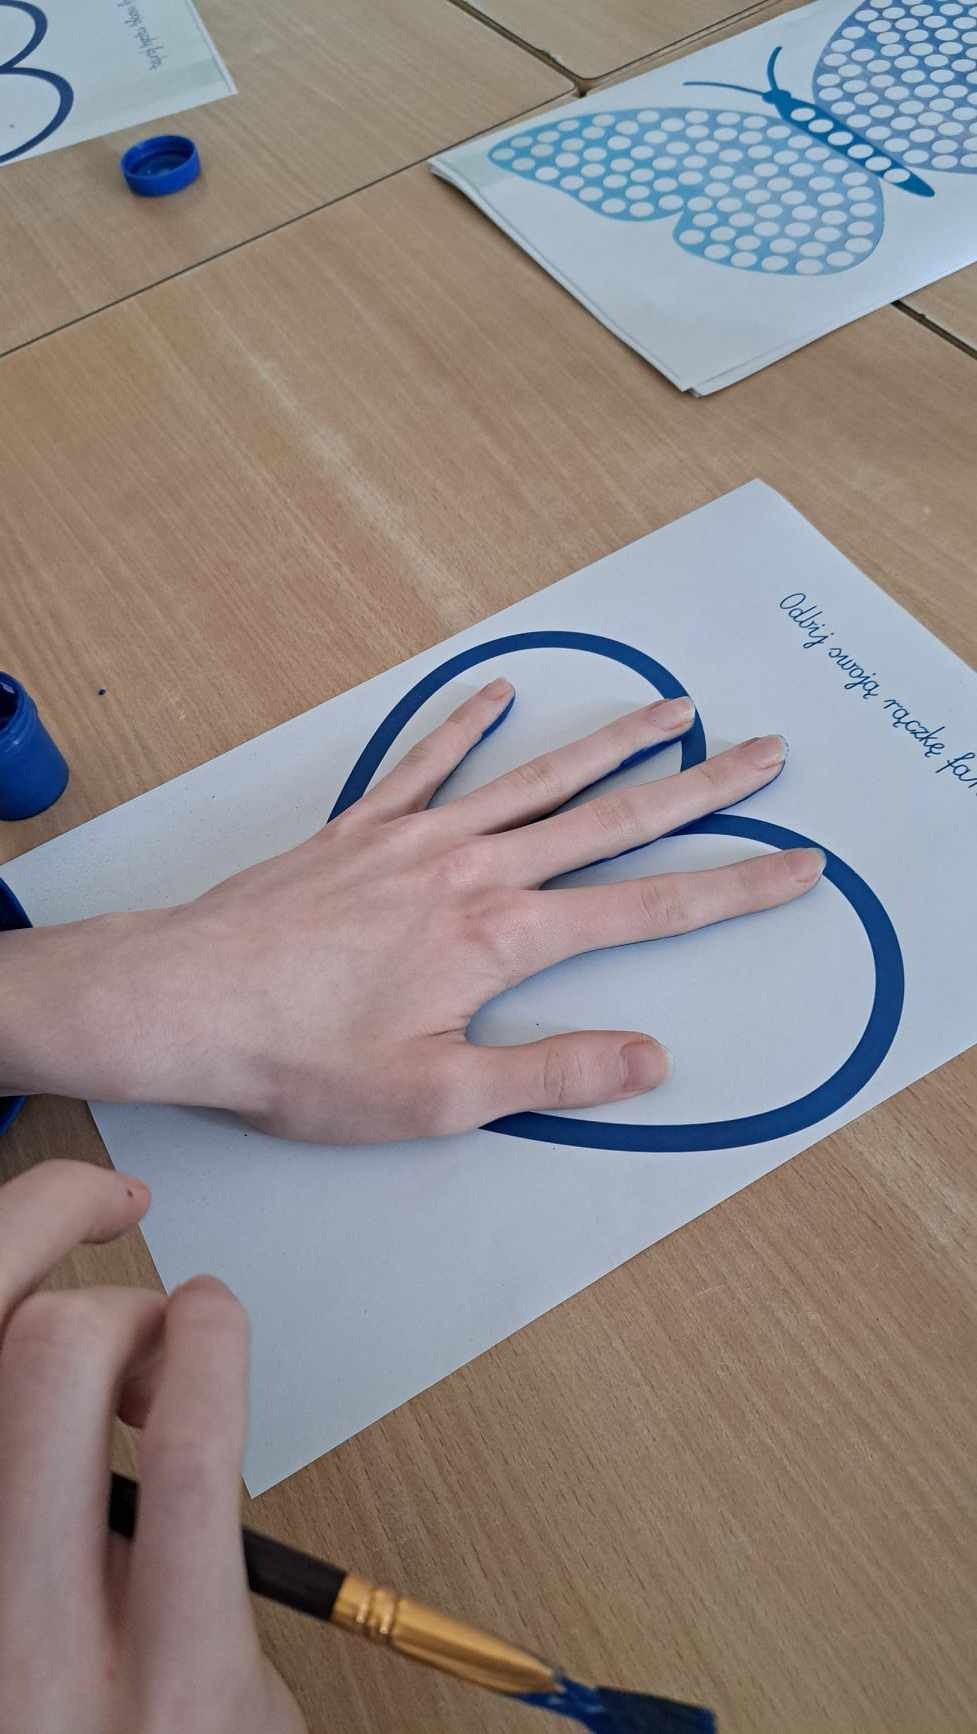 Na zdjęciu widać tylko dłoń jakiegoś ucznia, ktory odbija tę dłoń na kartce z niebieskim serduszkiem